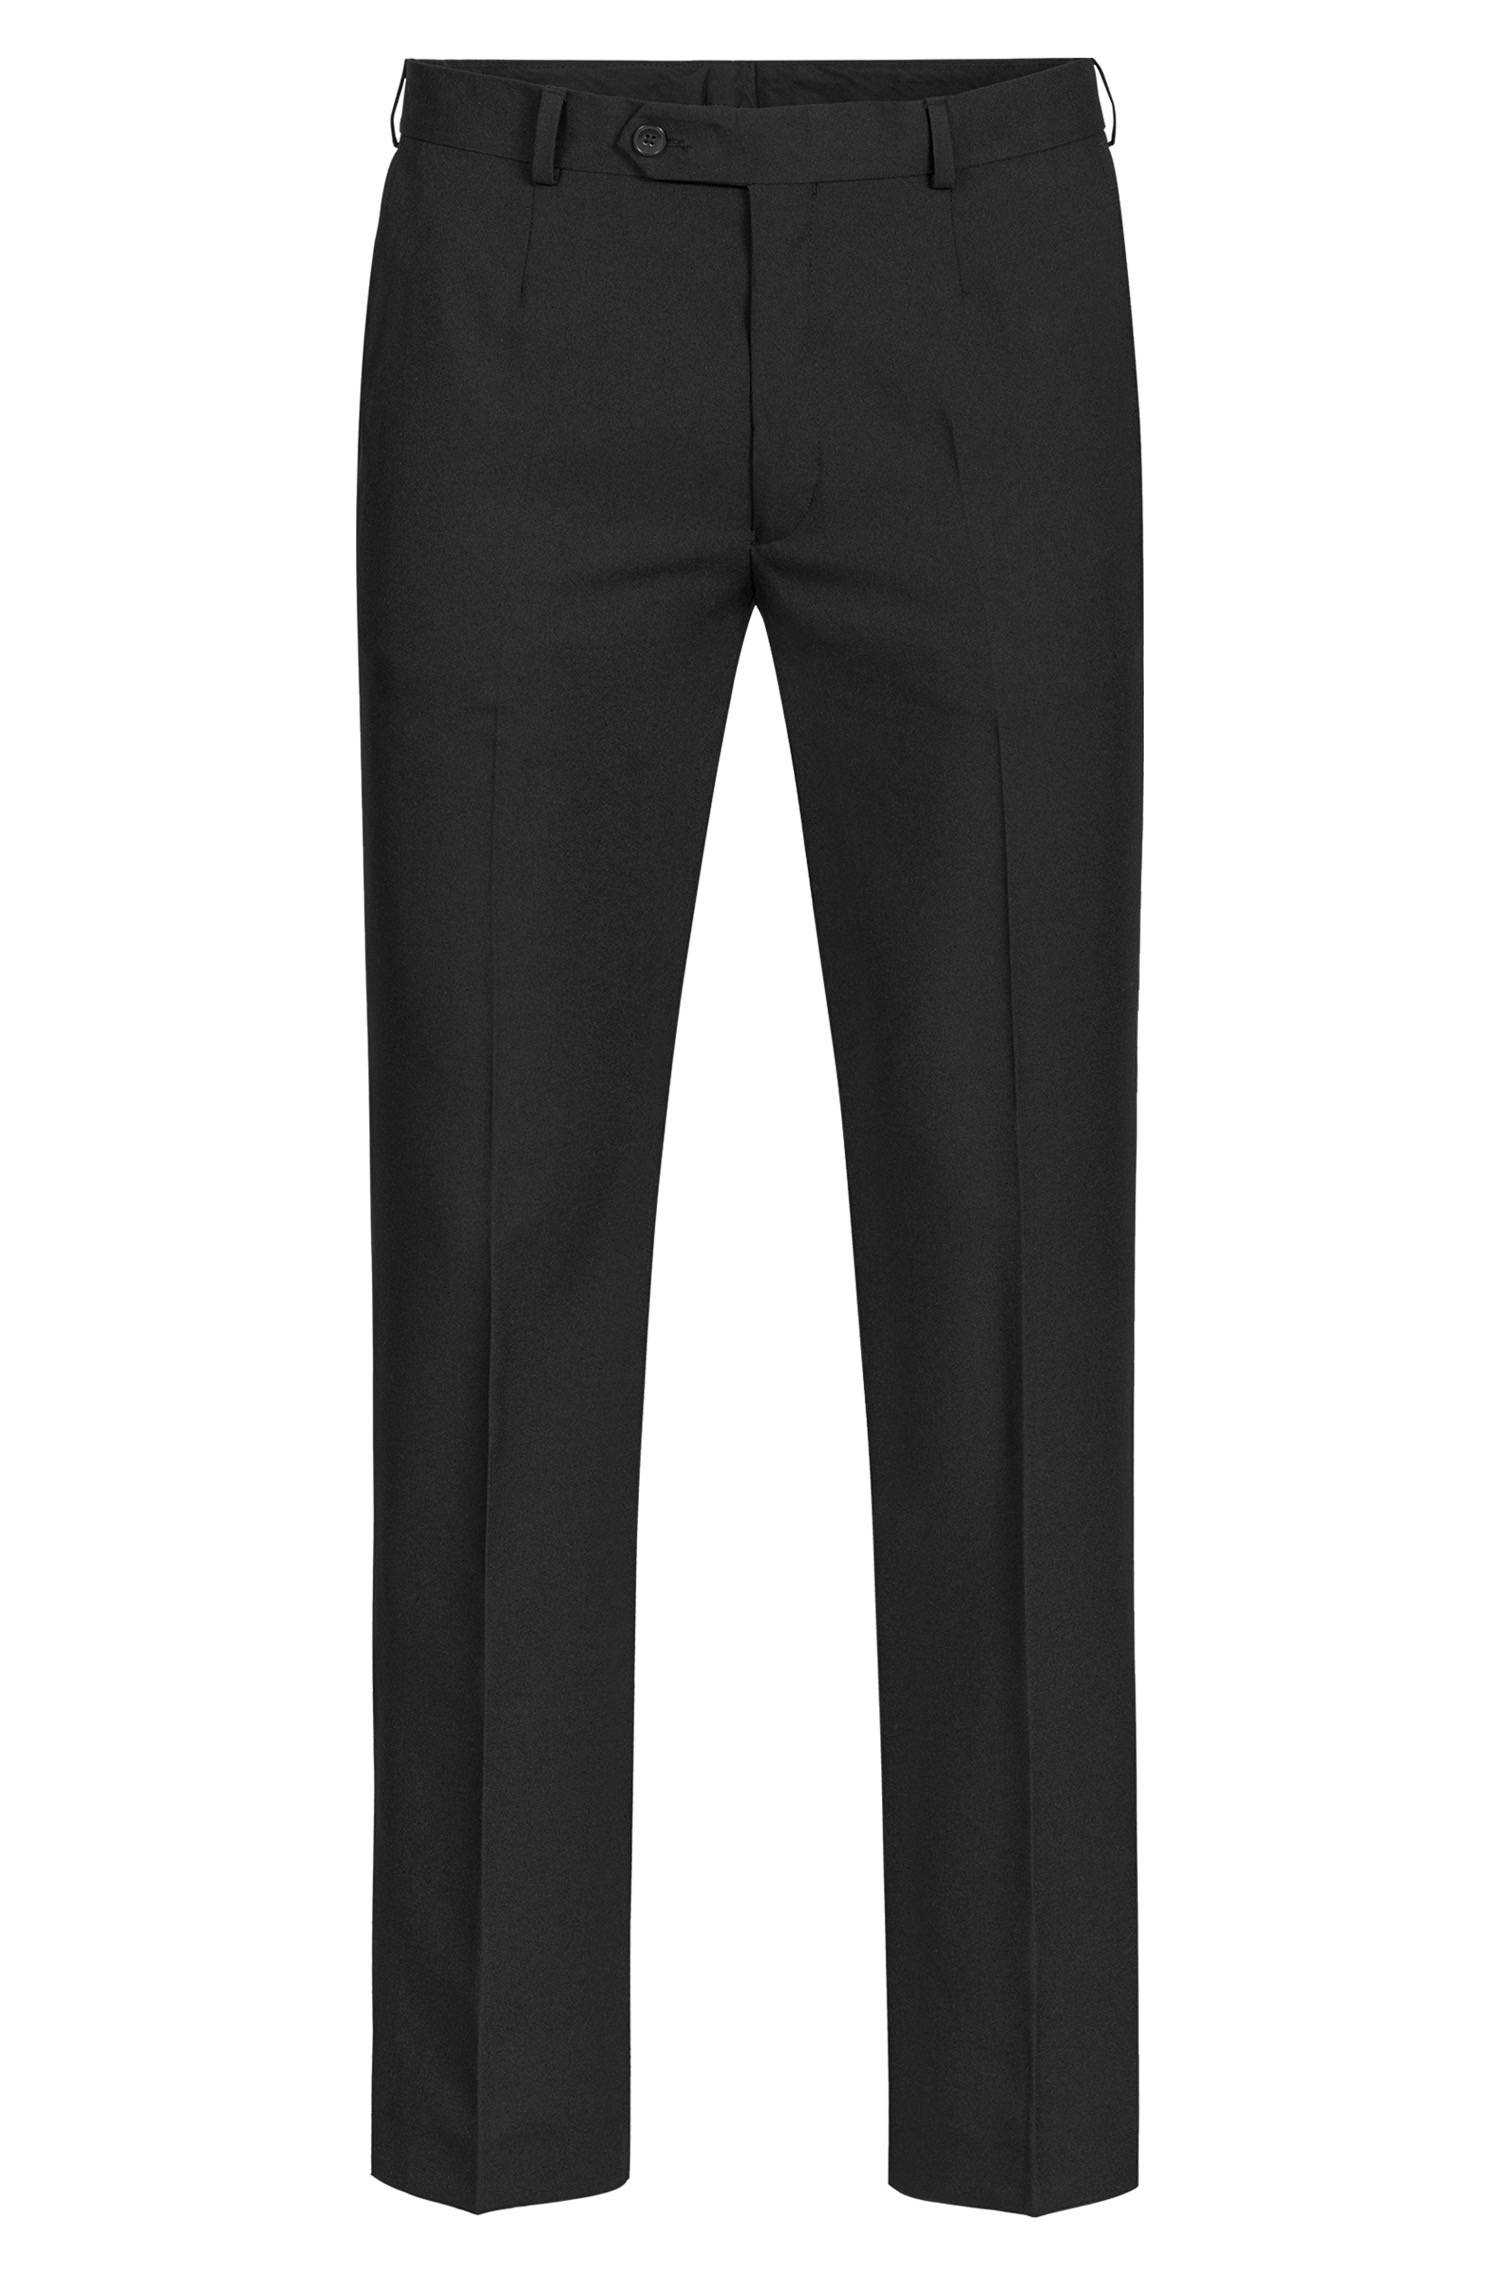 Men's trousers SIMPLE regular fit